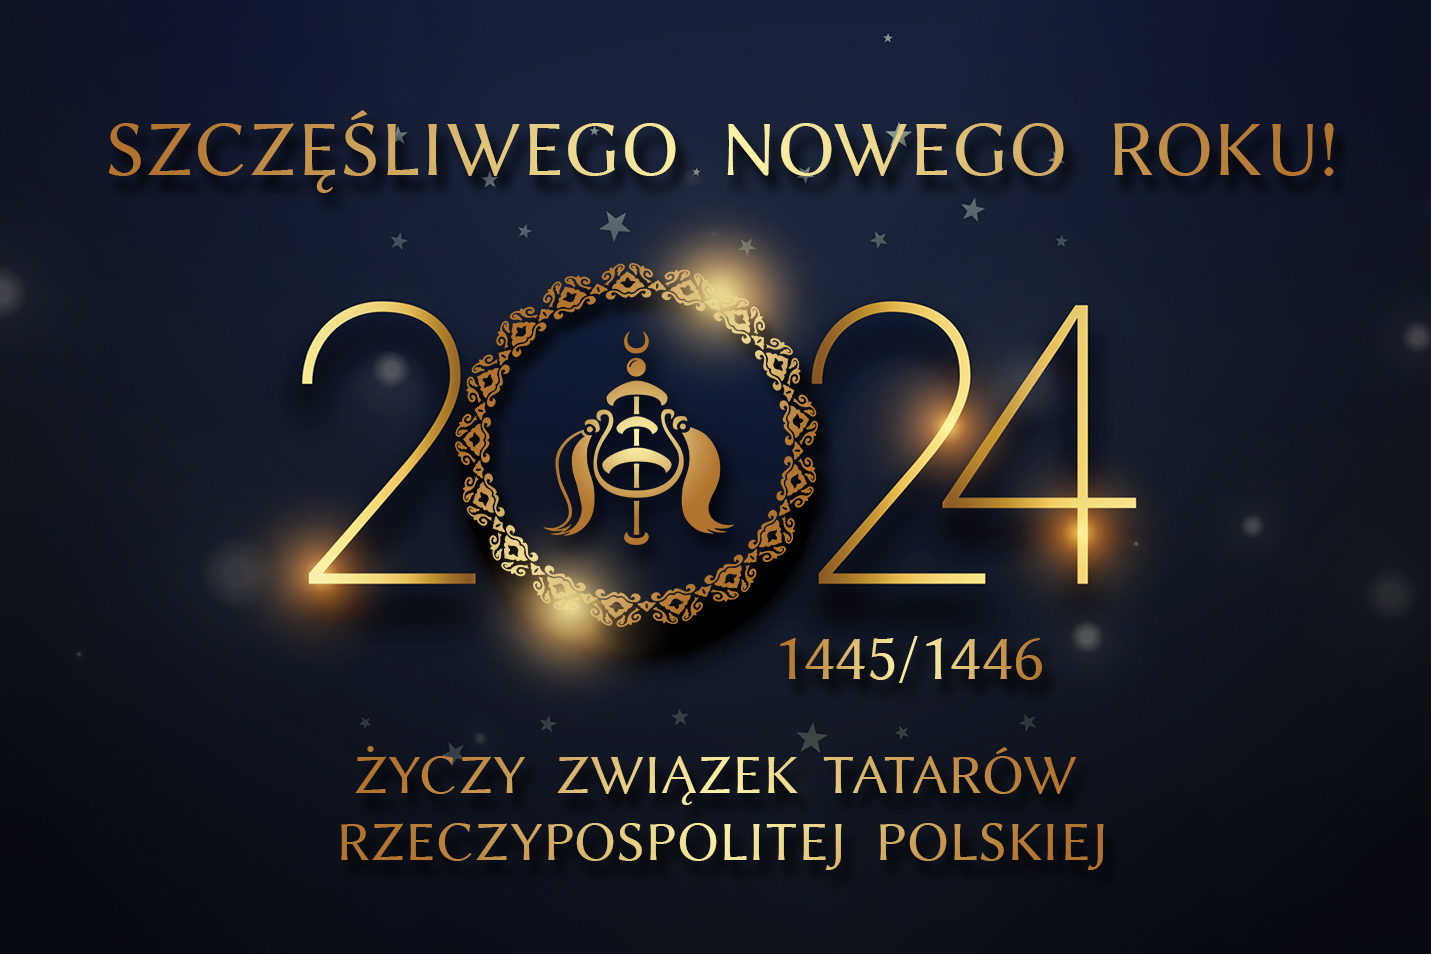 Grafika z życzeniami noworocznymi "Szczęśliwego Noergo Roku 2024 (1445/1446) życzy Związek Tatarów Rzeczypospolitej Polskiej"